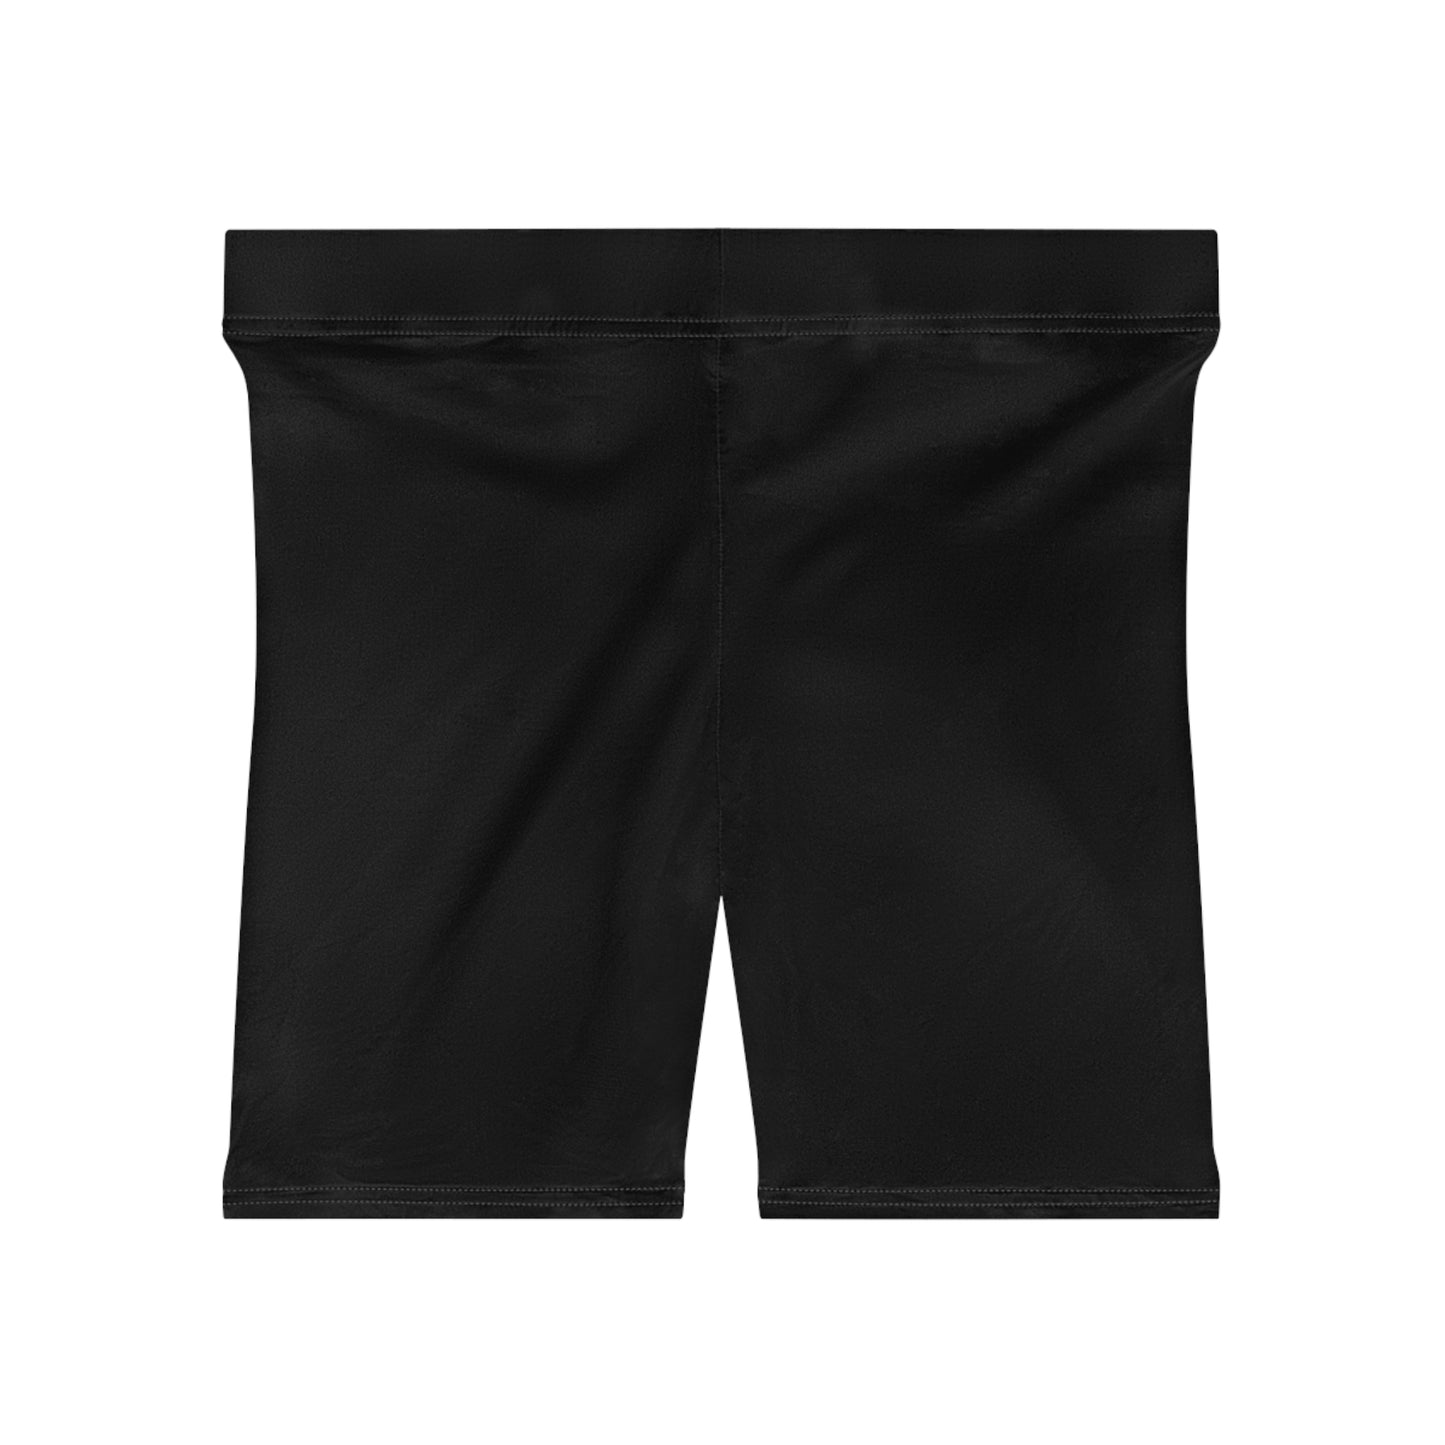 Lavish Biker Shorts